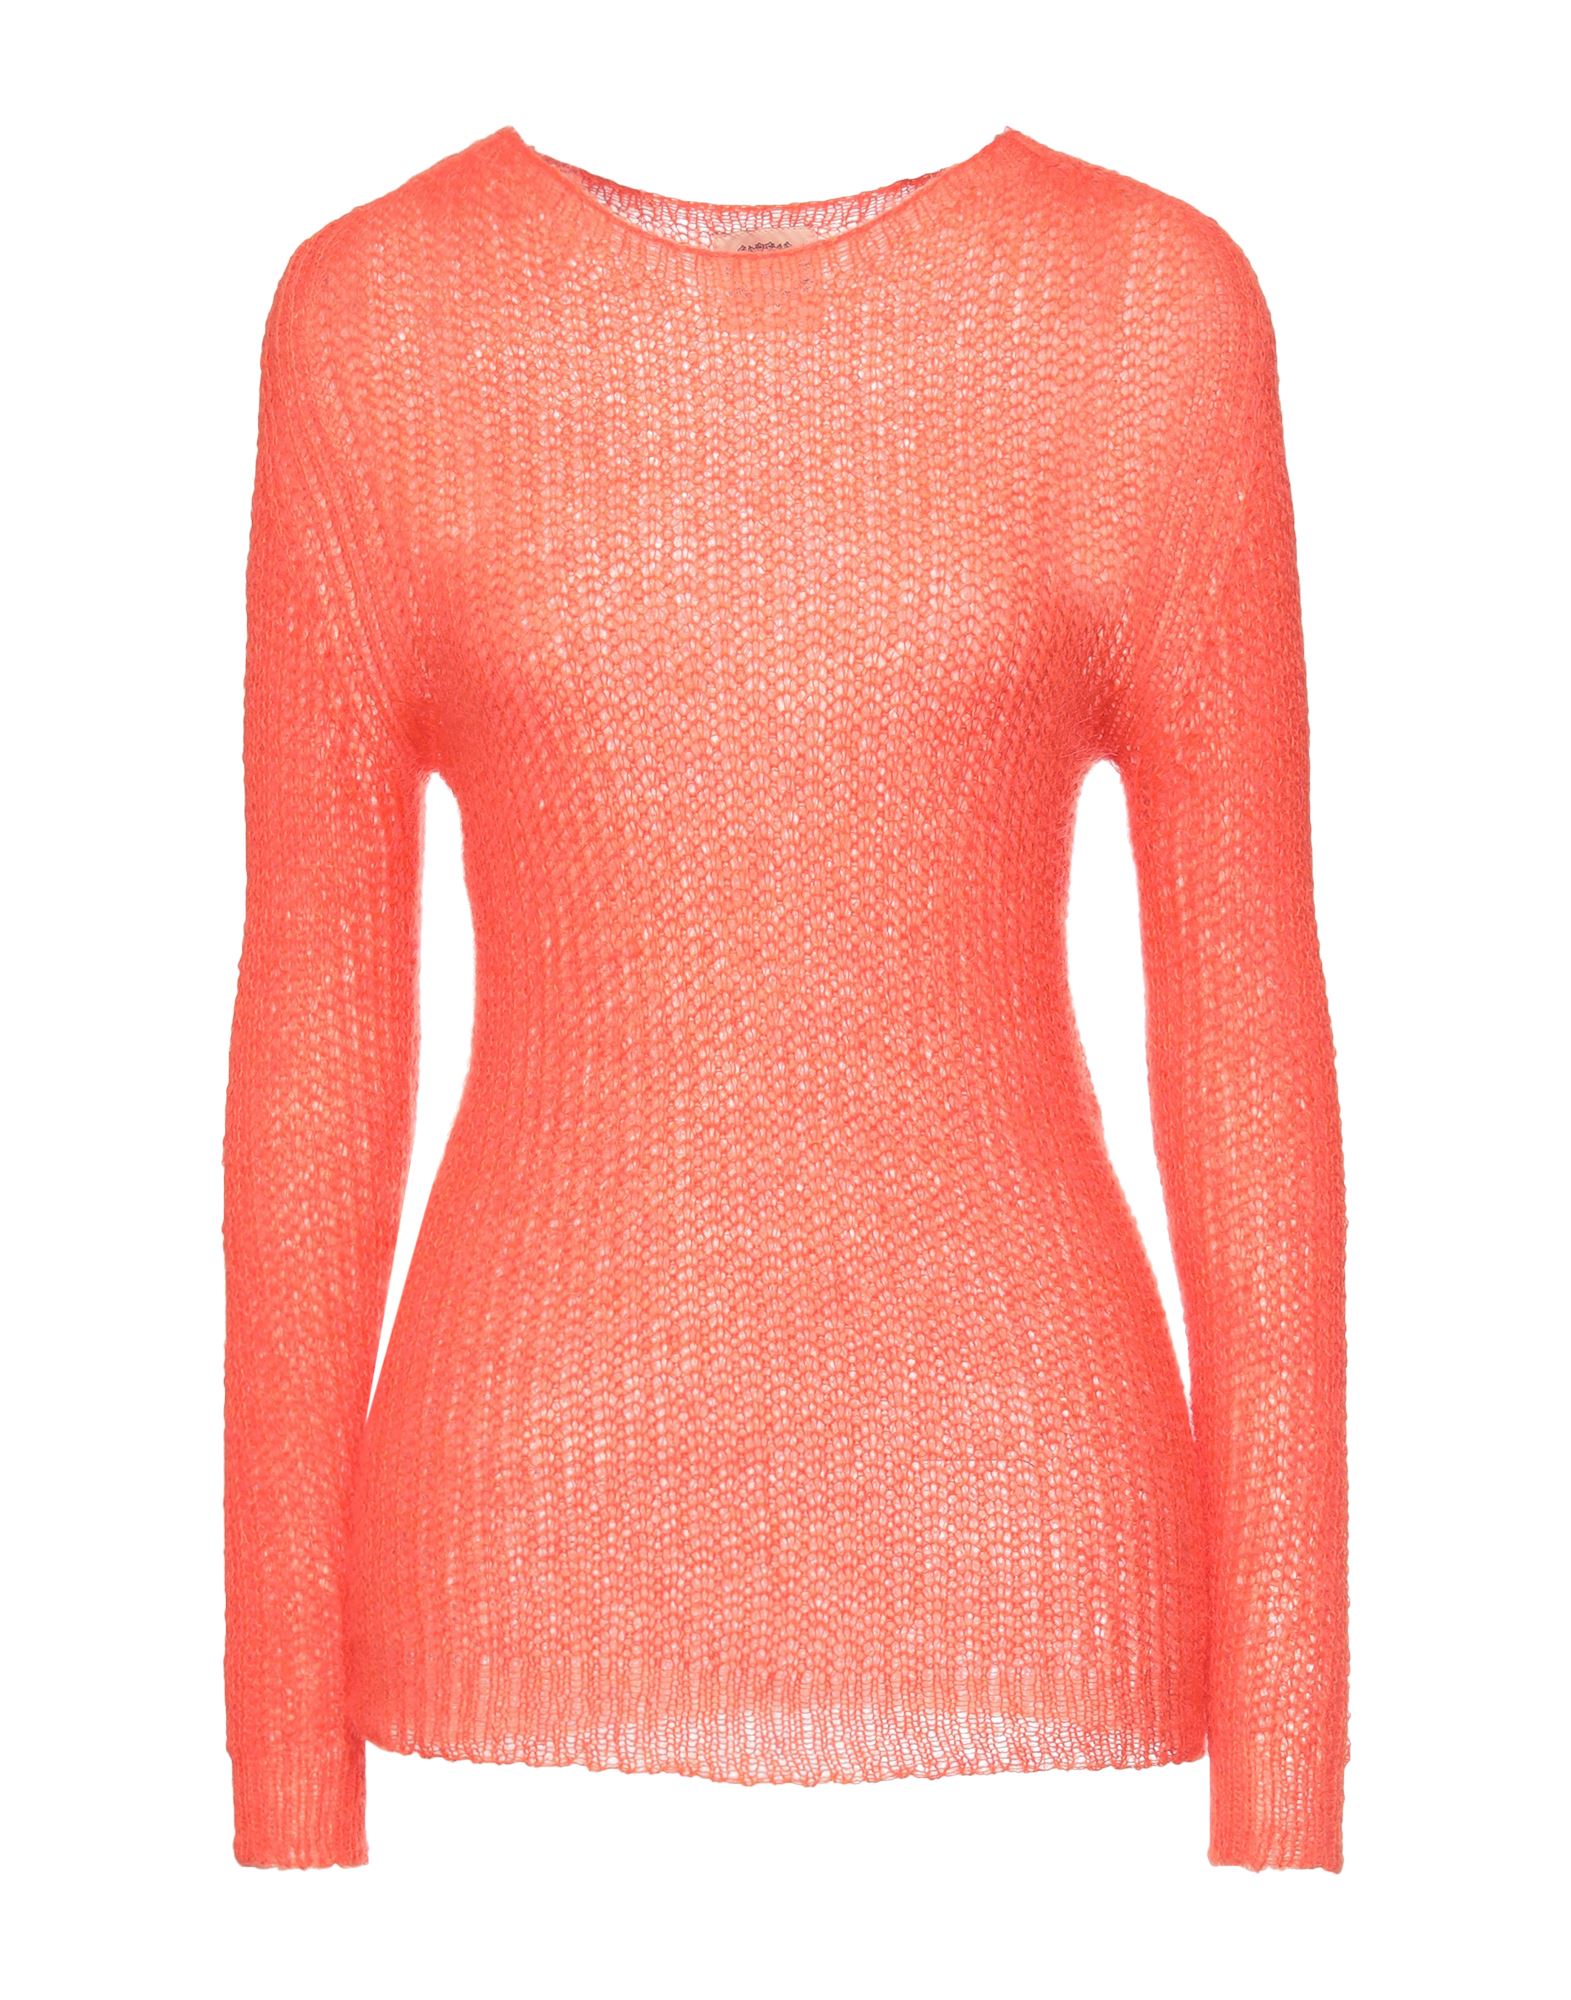 Shop Pink Memories Woman Sweater Orange Size 8 Acrylic, Mohair Wool, Polyamide, Wool